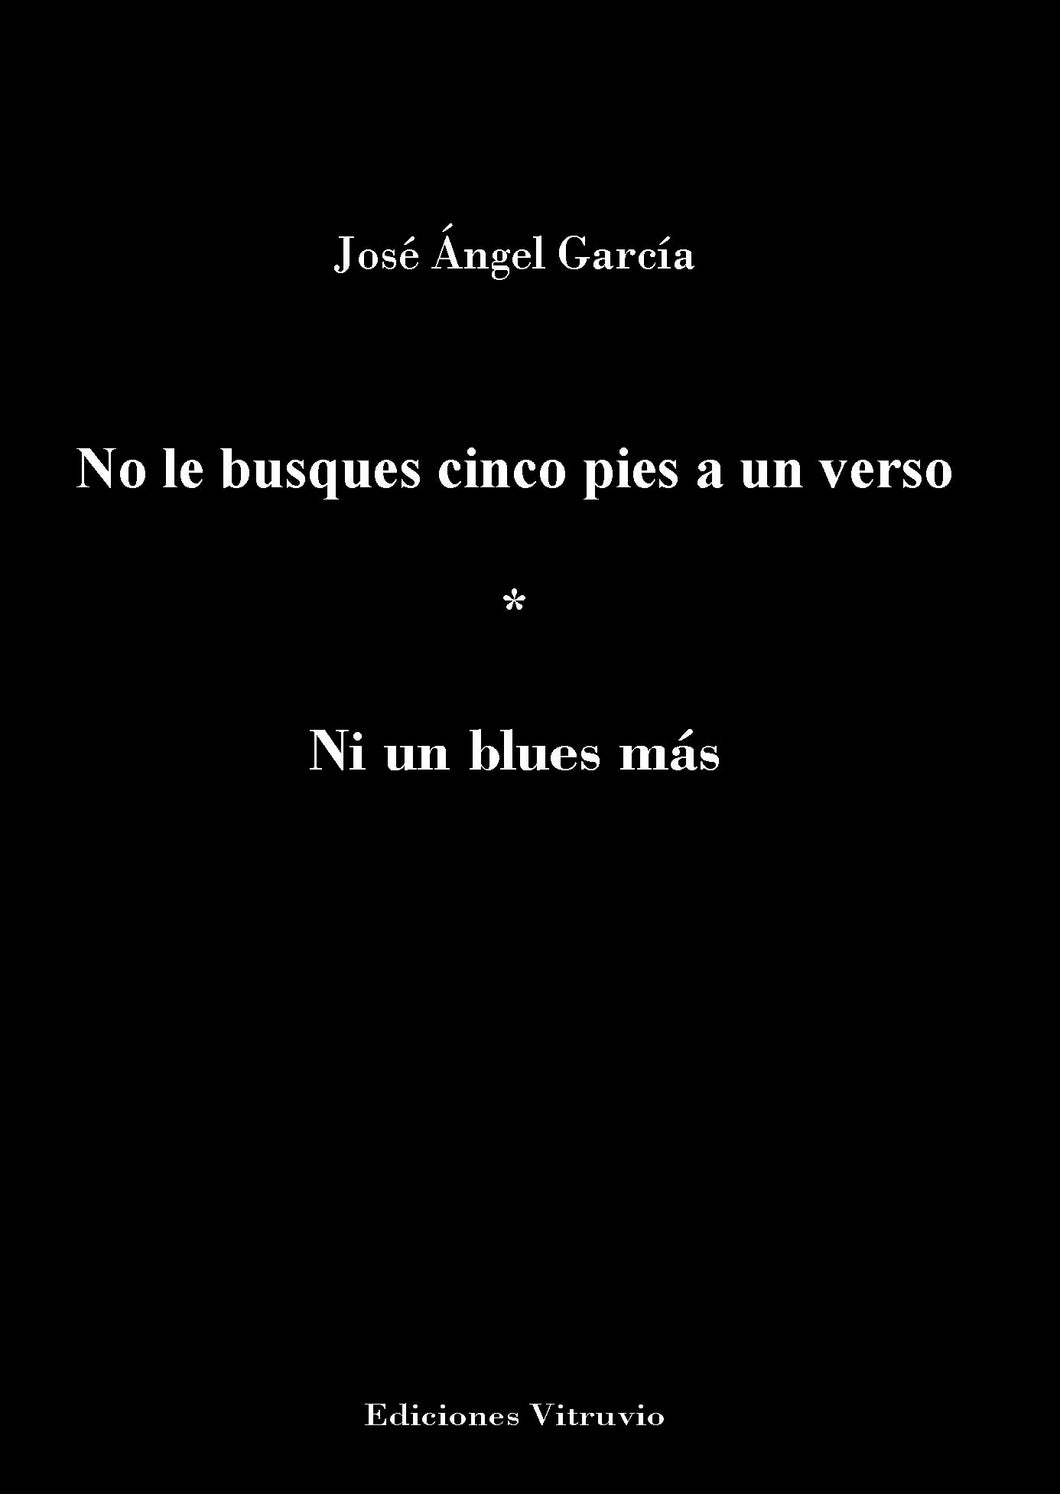 No le busques cinco pies a un verso, de José Ángel García